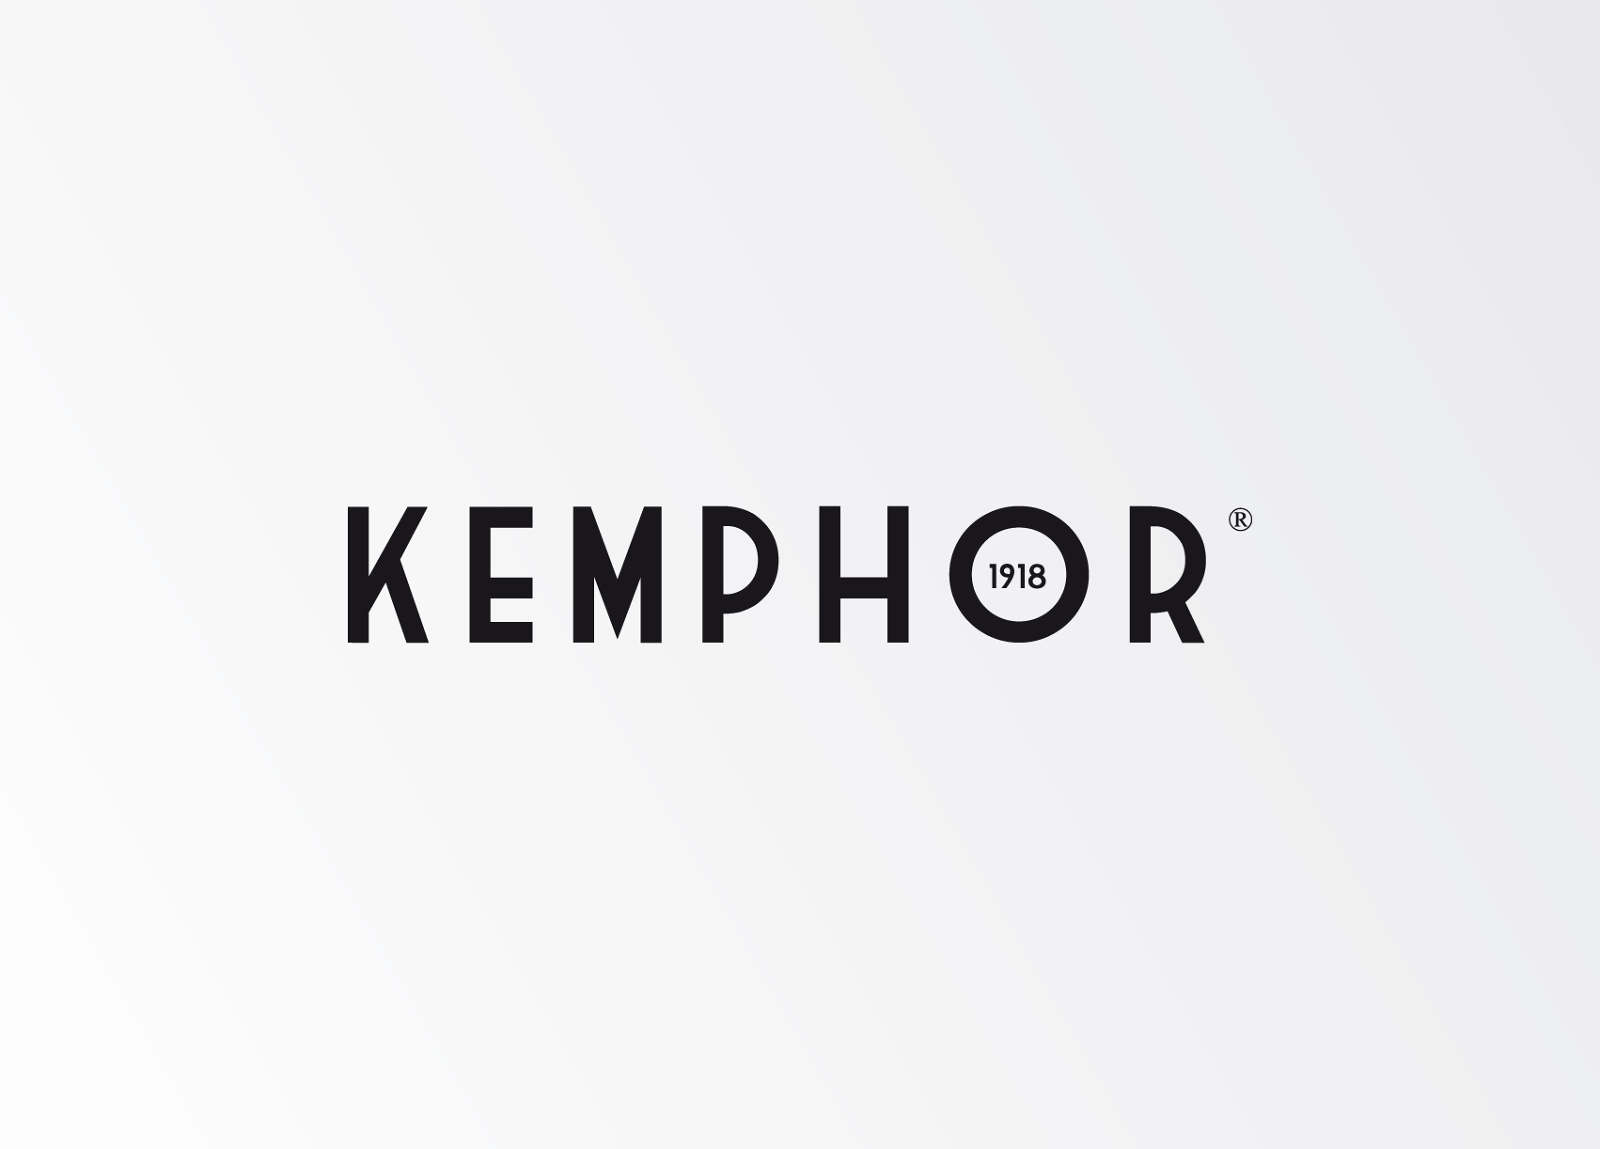 KEMPHOR